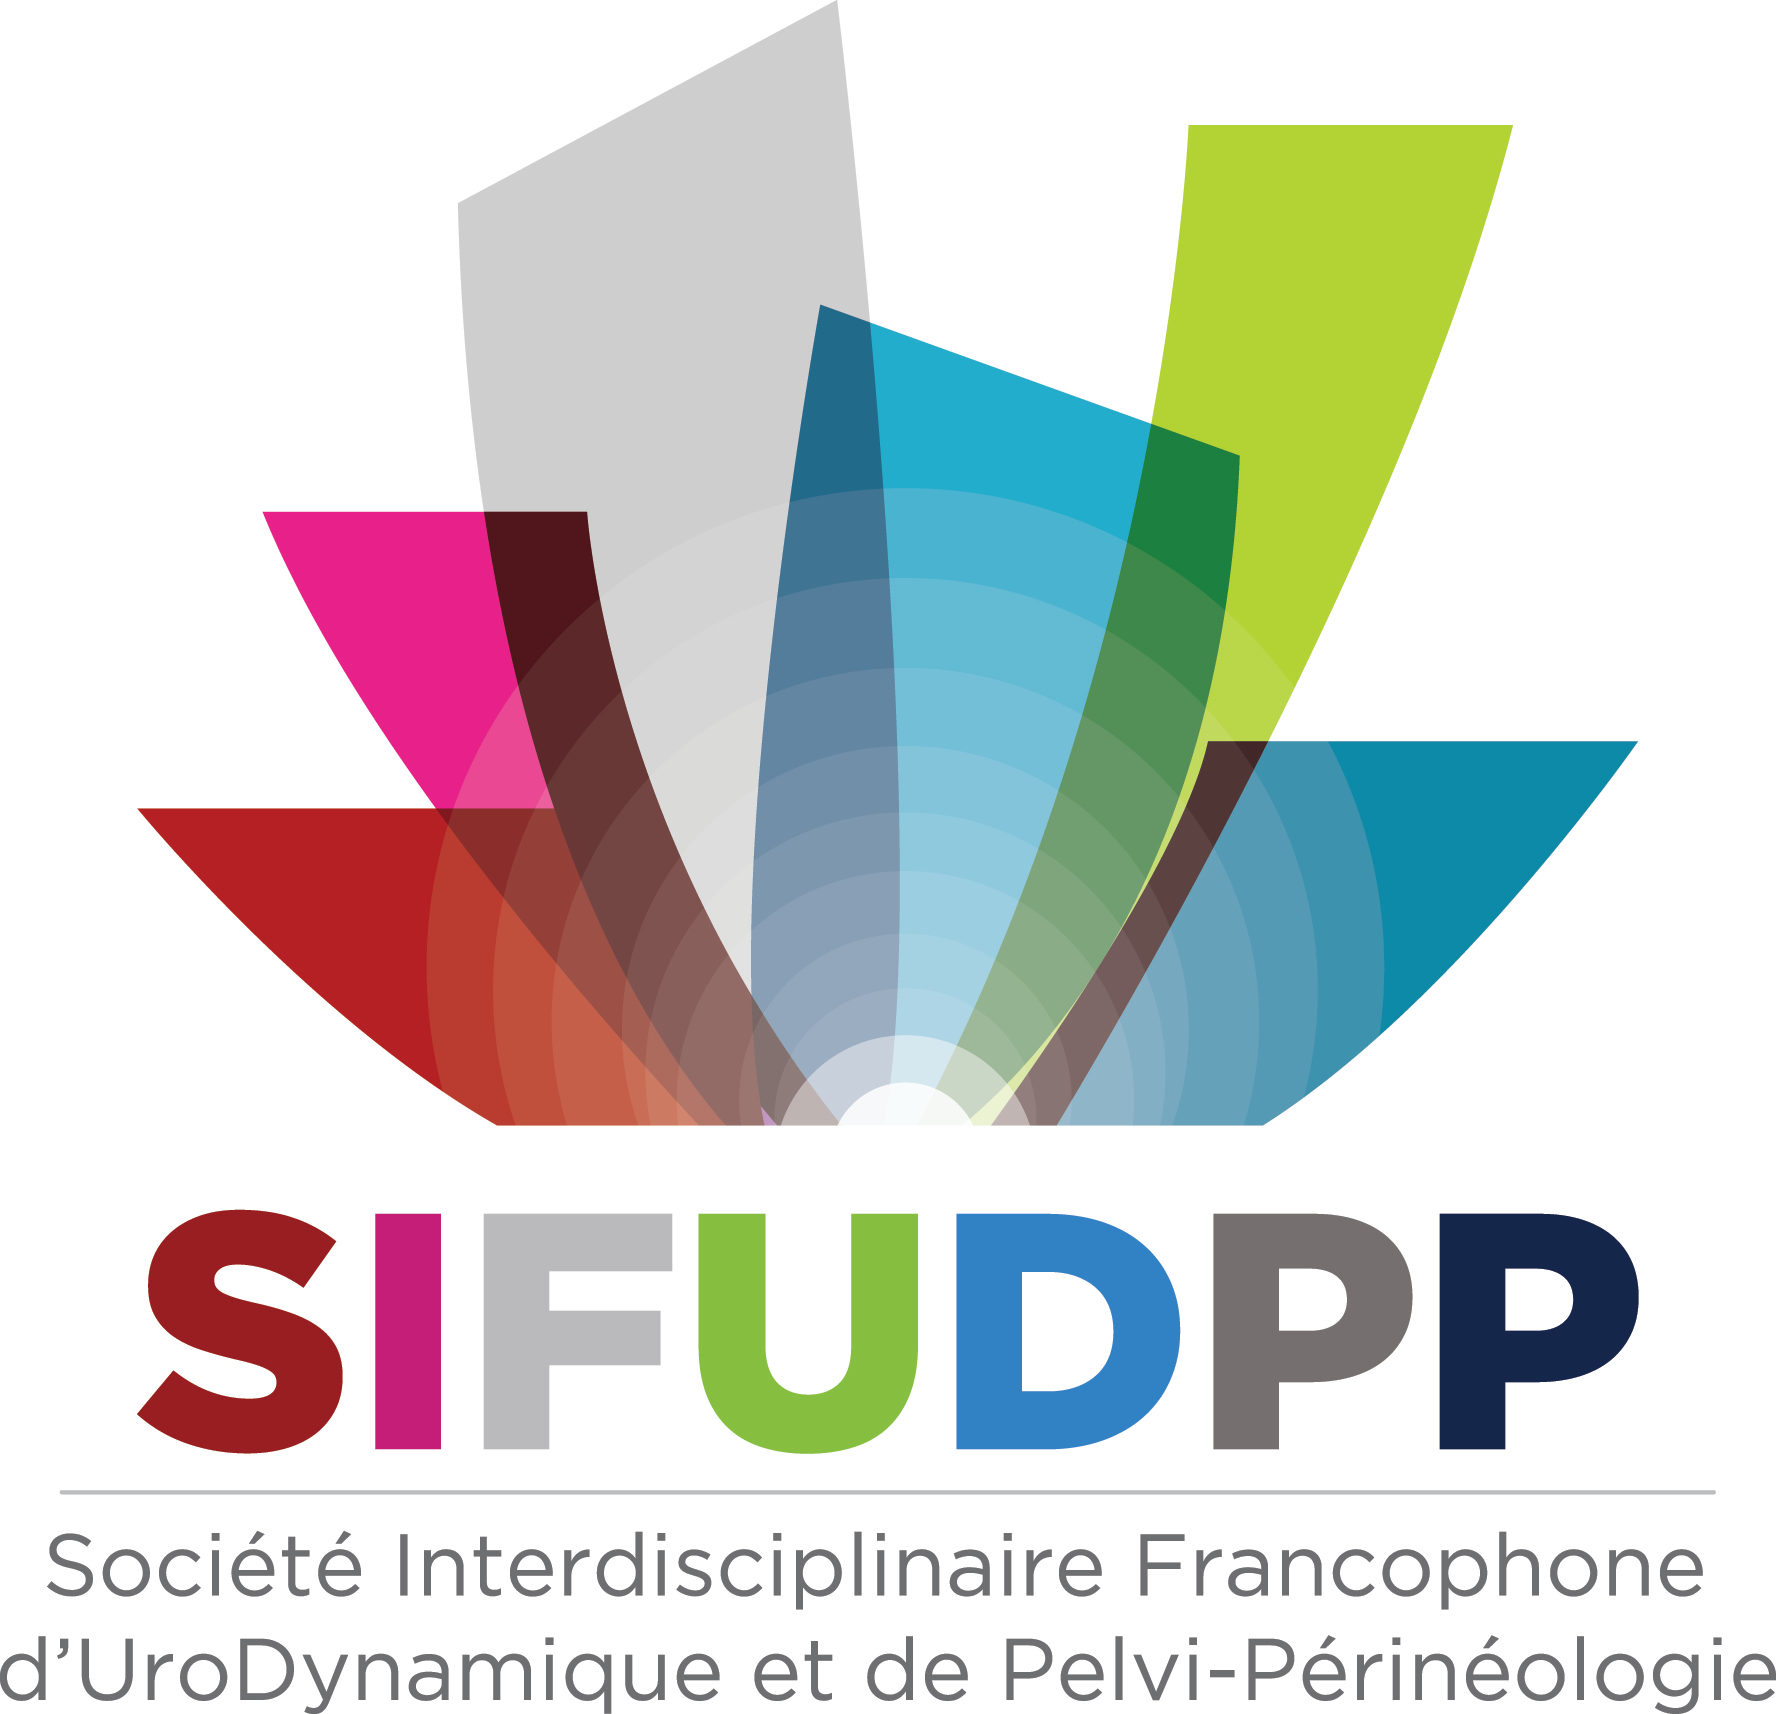 SIFUD-PP La Baule 2015 : Réviser vos recommandations : session interactive avec vote de la salle